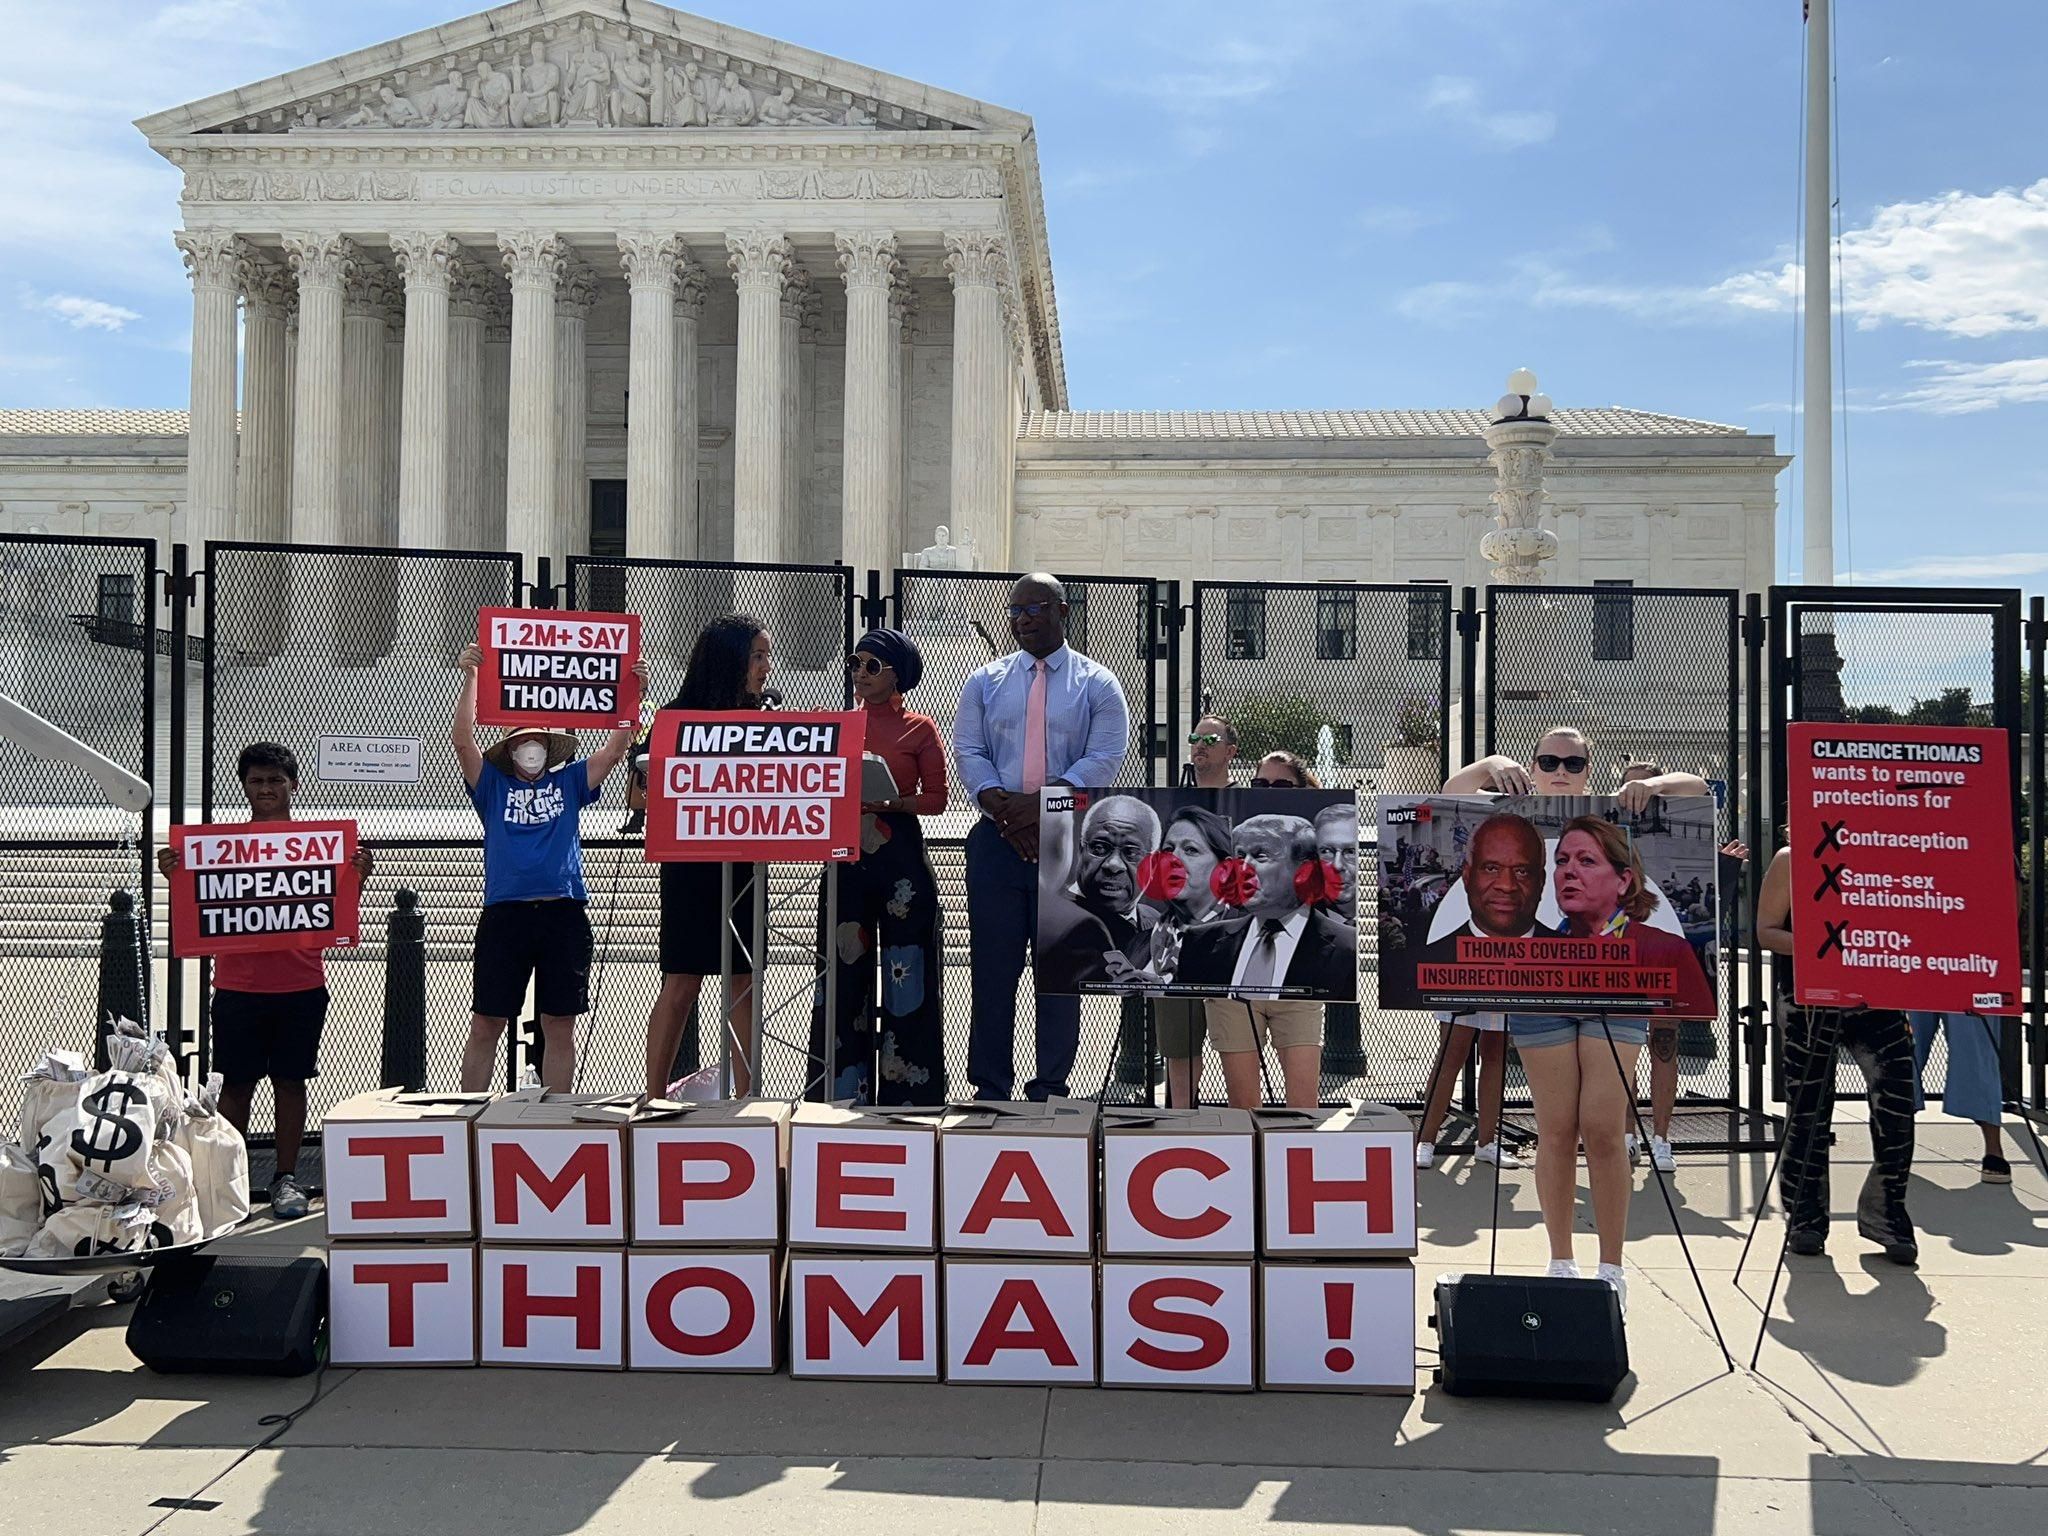 Impeach Thomas event